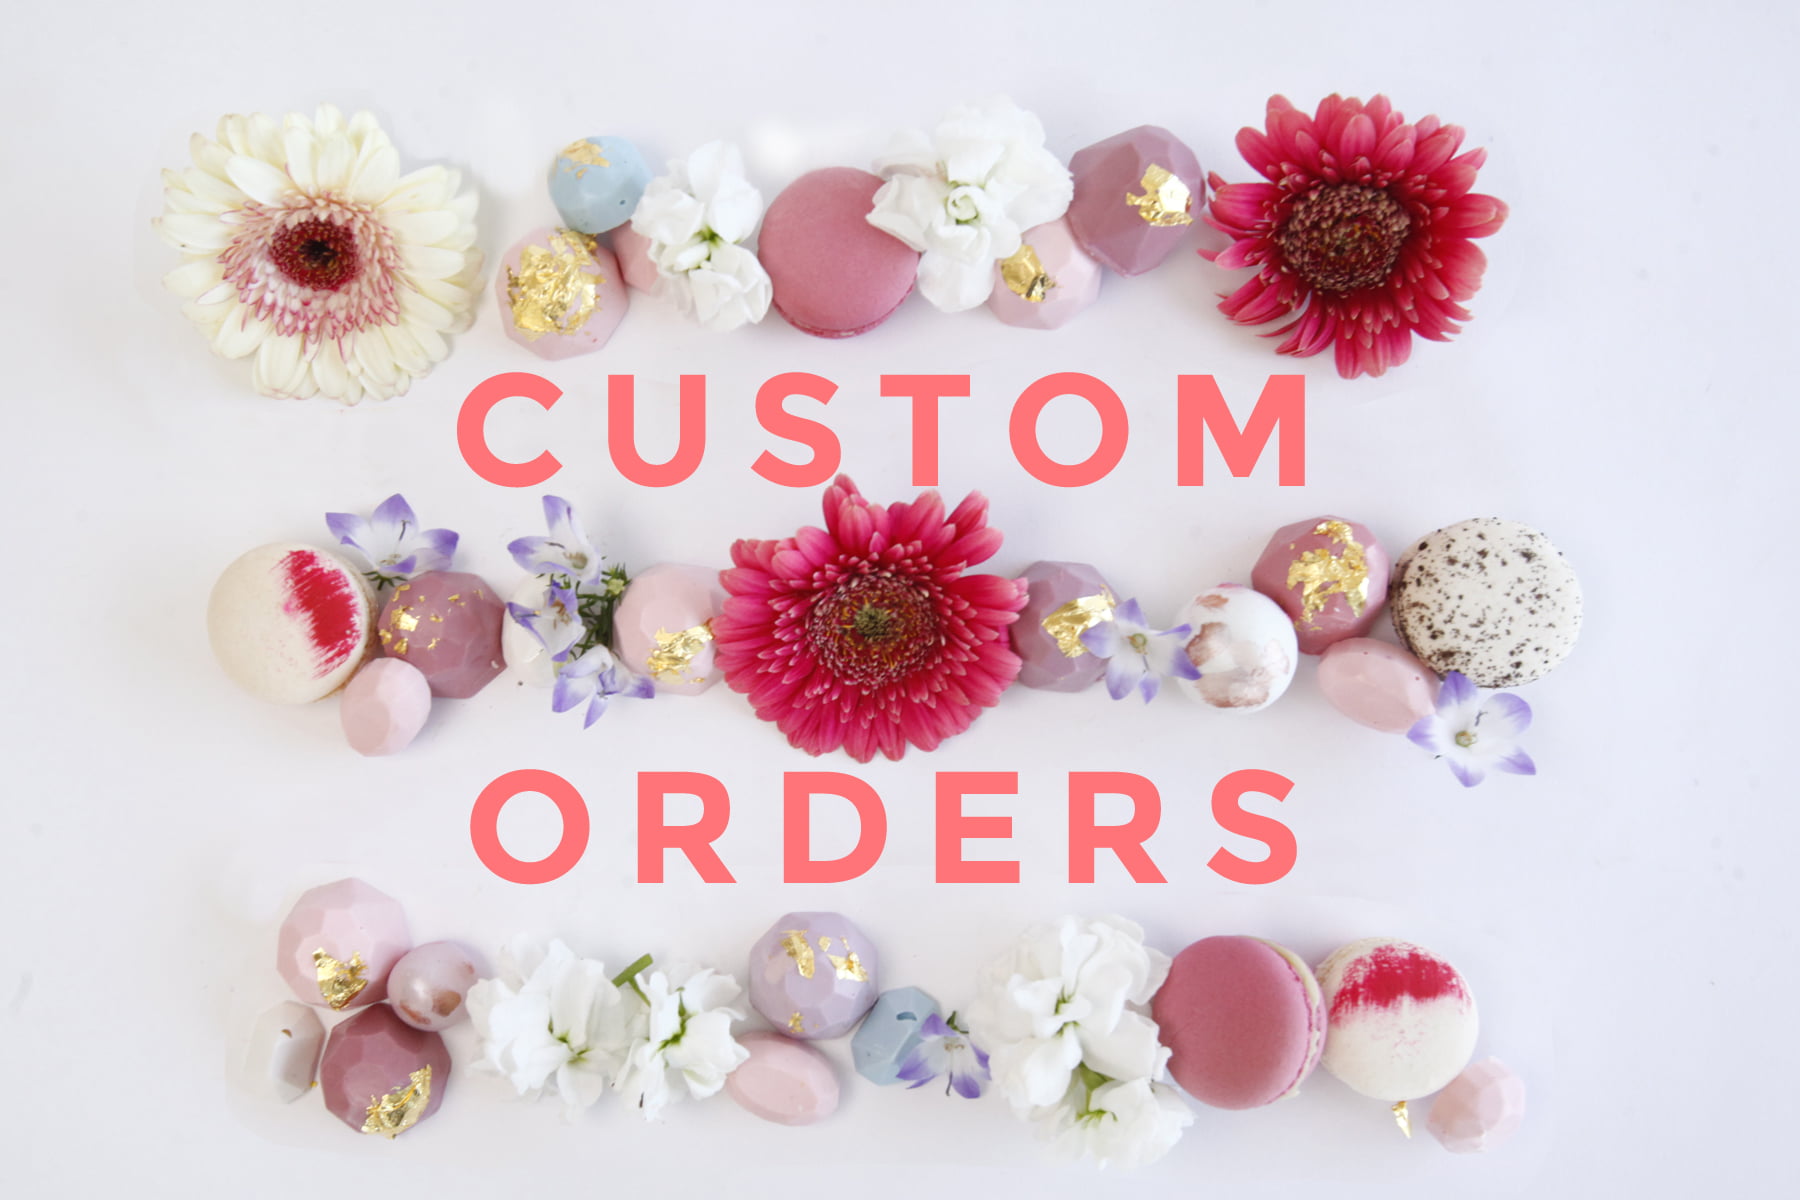 12 Oaks Desserts Custom Orders and Tastings